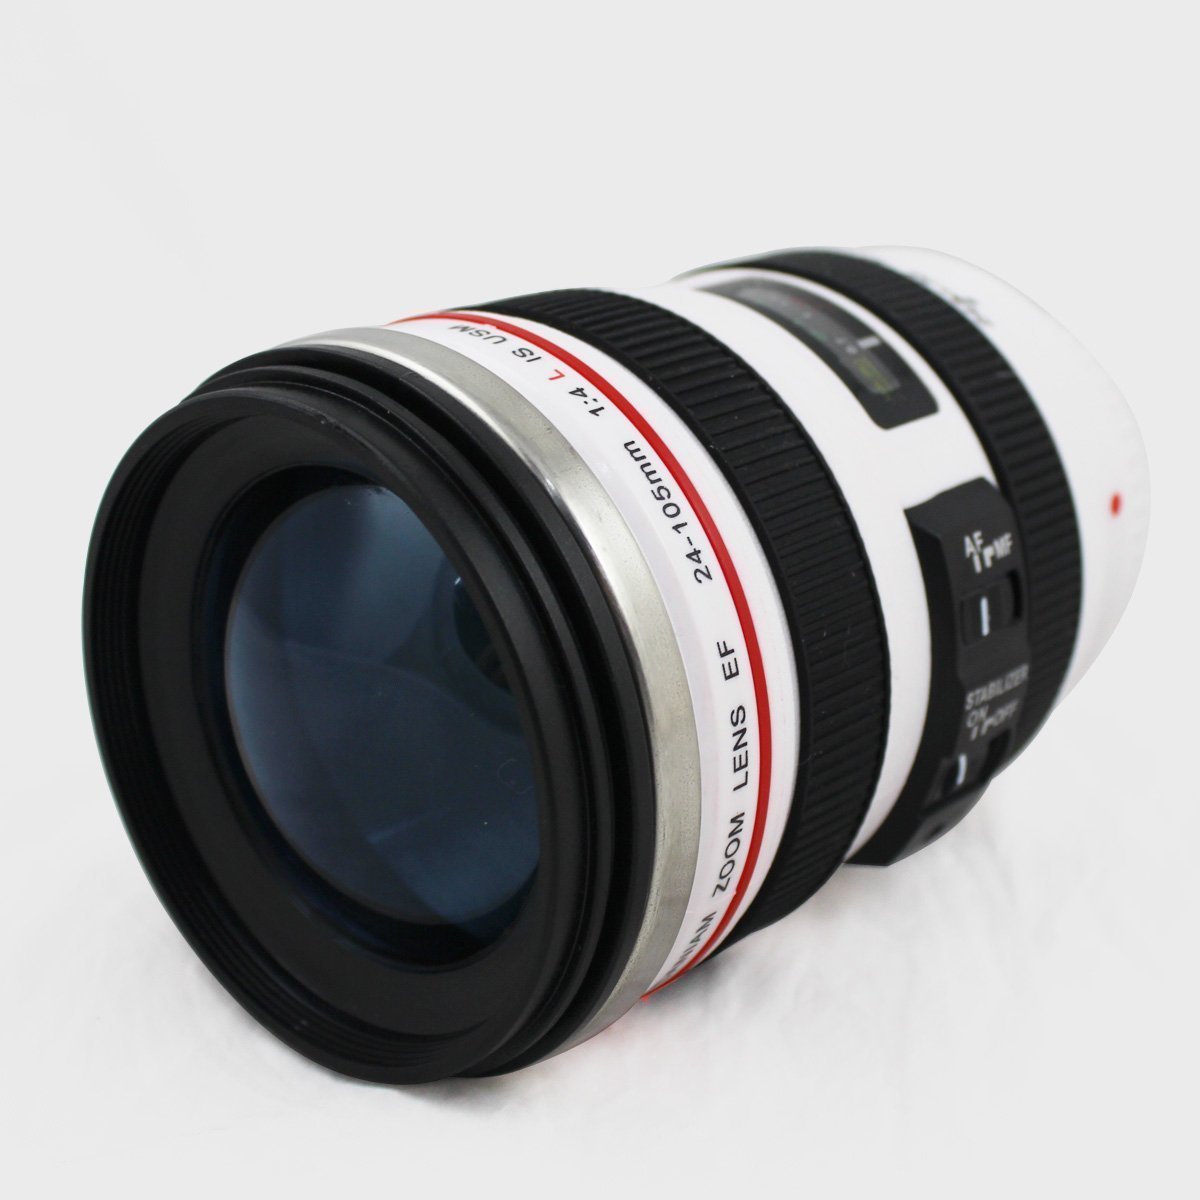 レンズ型 マグカップ タンブラー カメラ レンズ仕様 24ー105ミリタイプ 保温 コーヒーカップ ホワイト